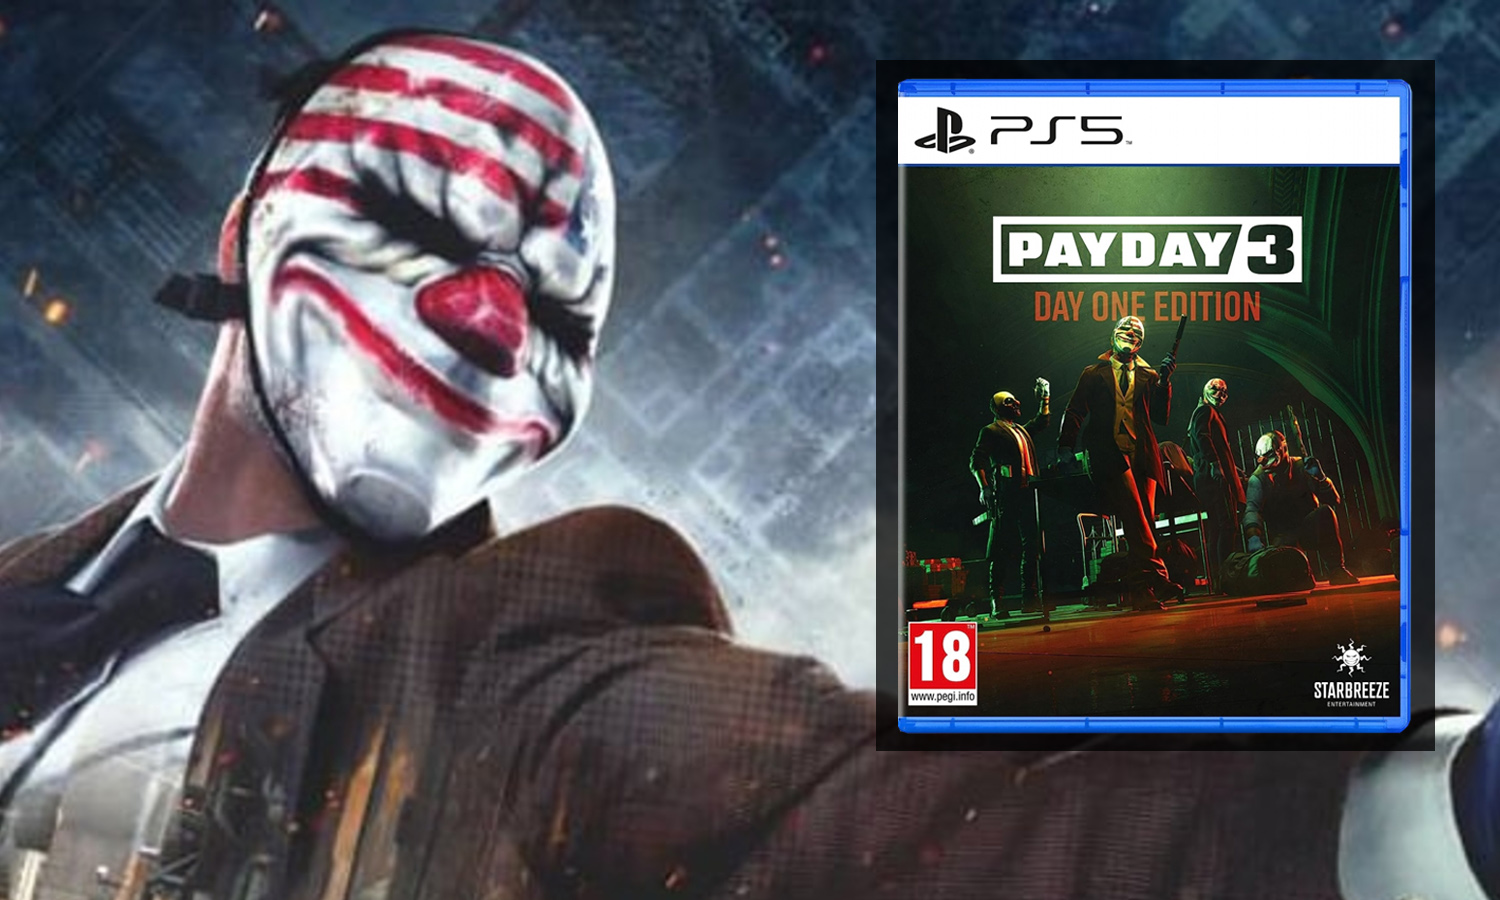 خرید بازی Payday 3 نسخه Day One برای PS5